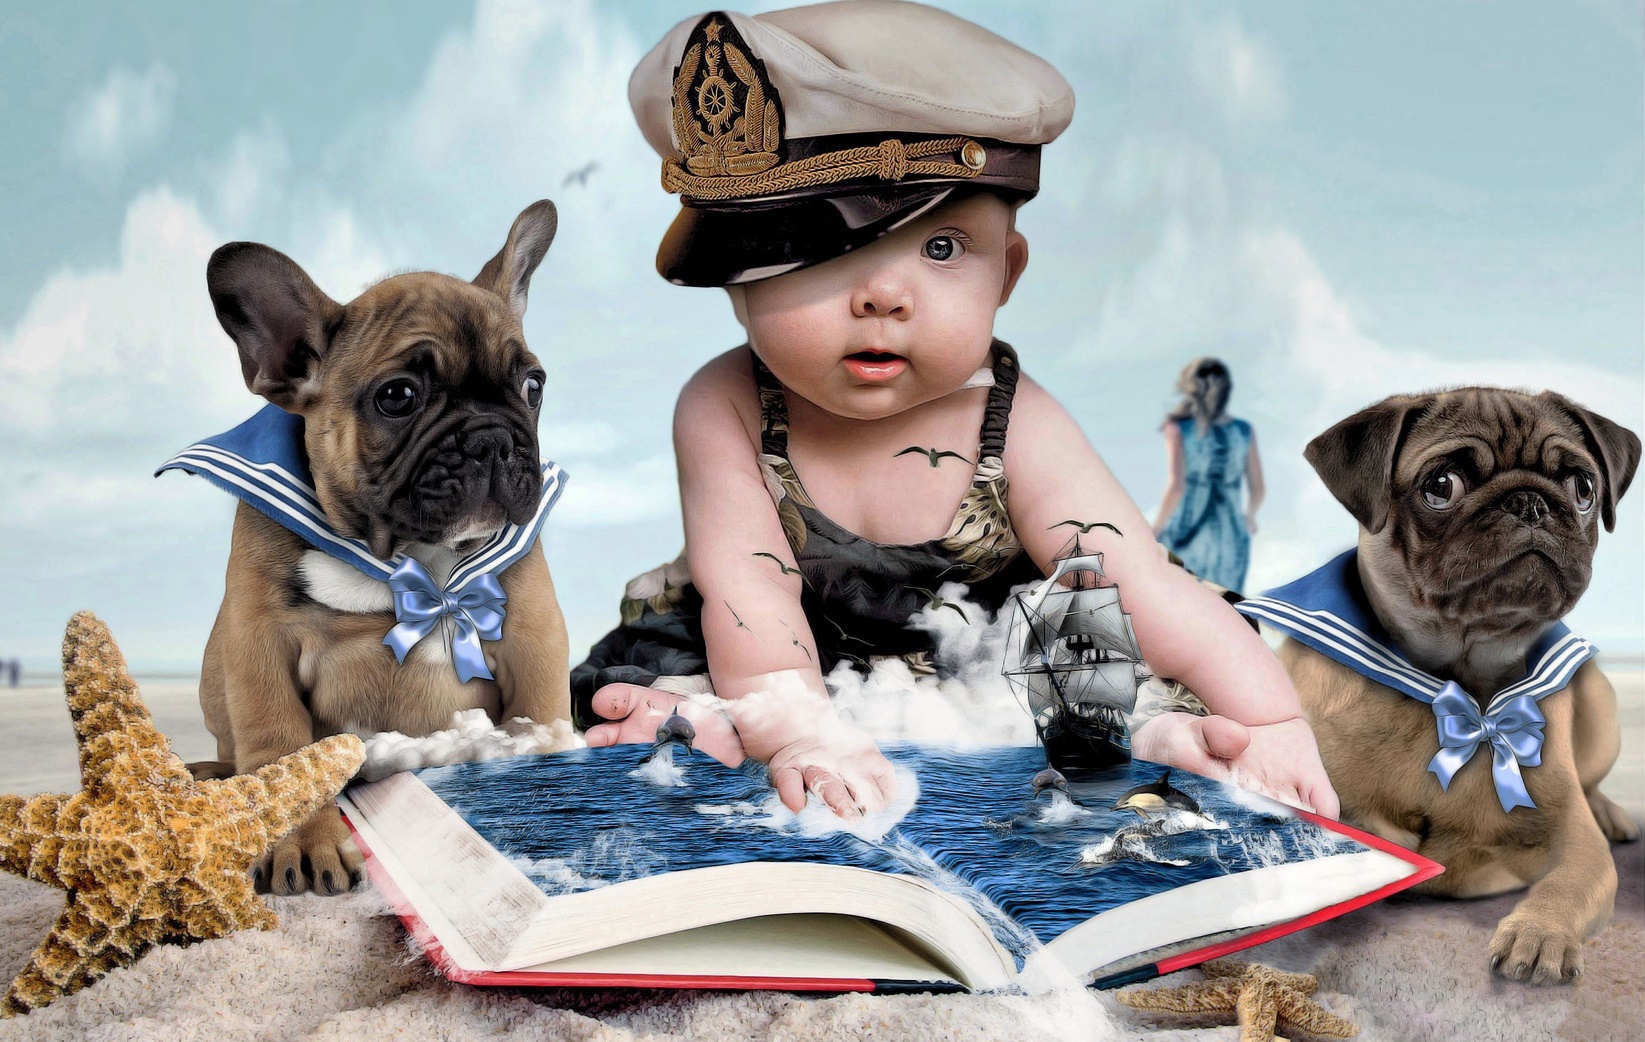 Скачать обои бесплатно Пляж, Собака, Корабль, Фотографии, Младенец, Манипуляции картинка на рабочий стол ПК